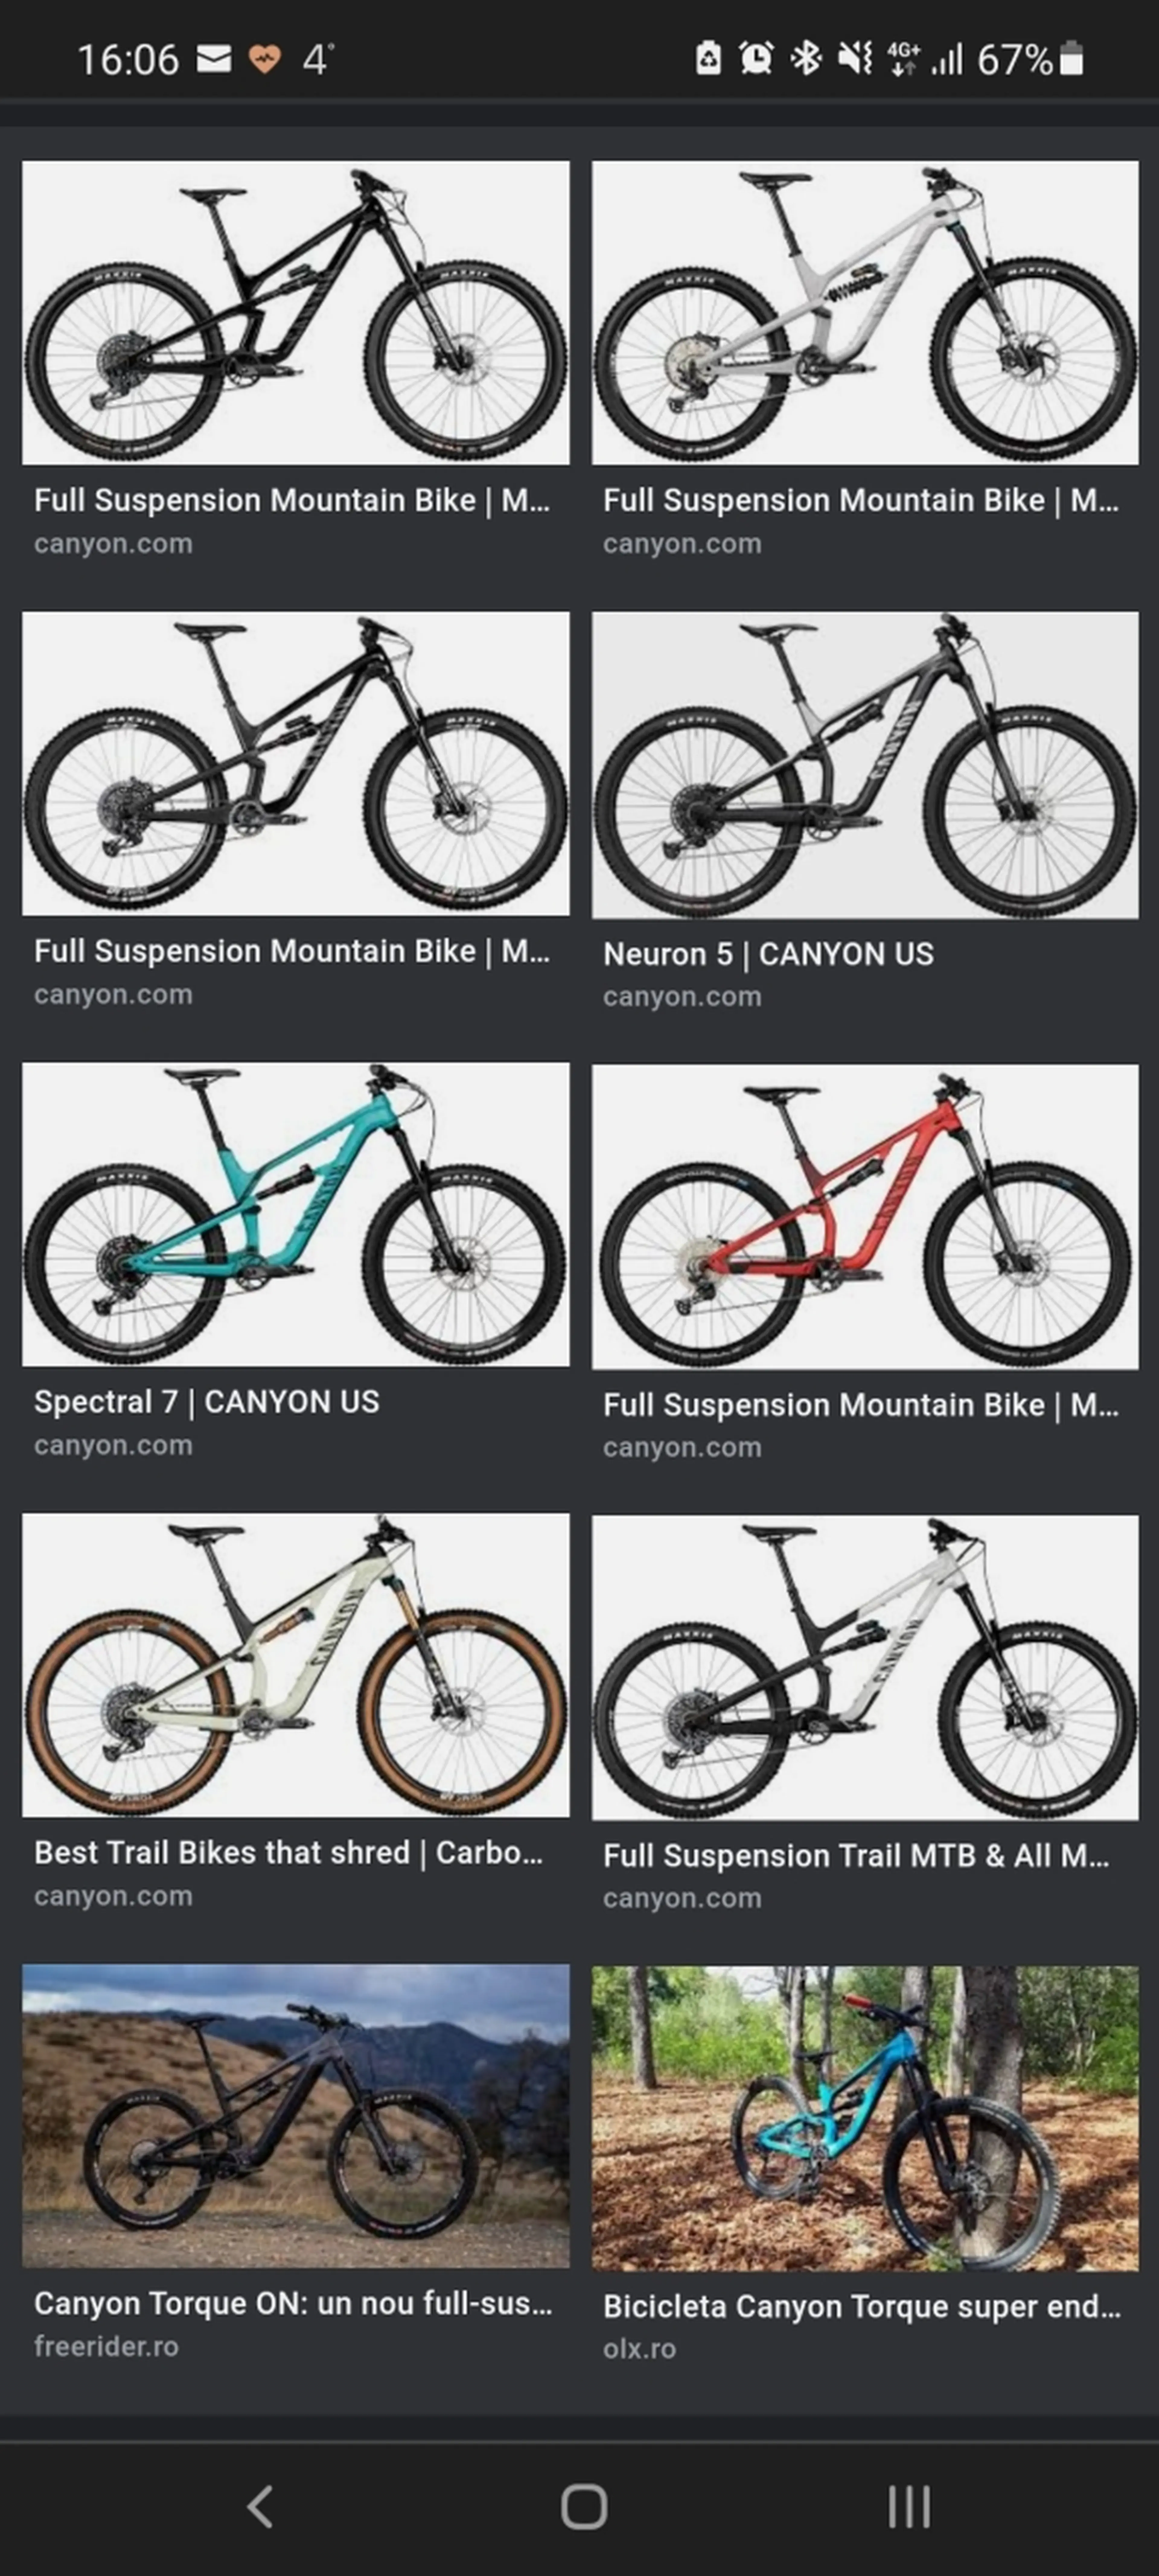 1. Cumpăr o bicicleta full suspension îngrijită